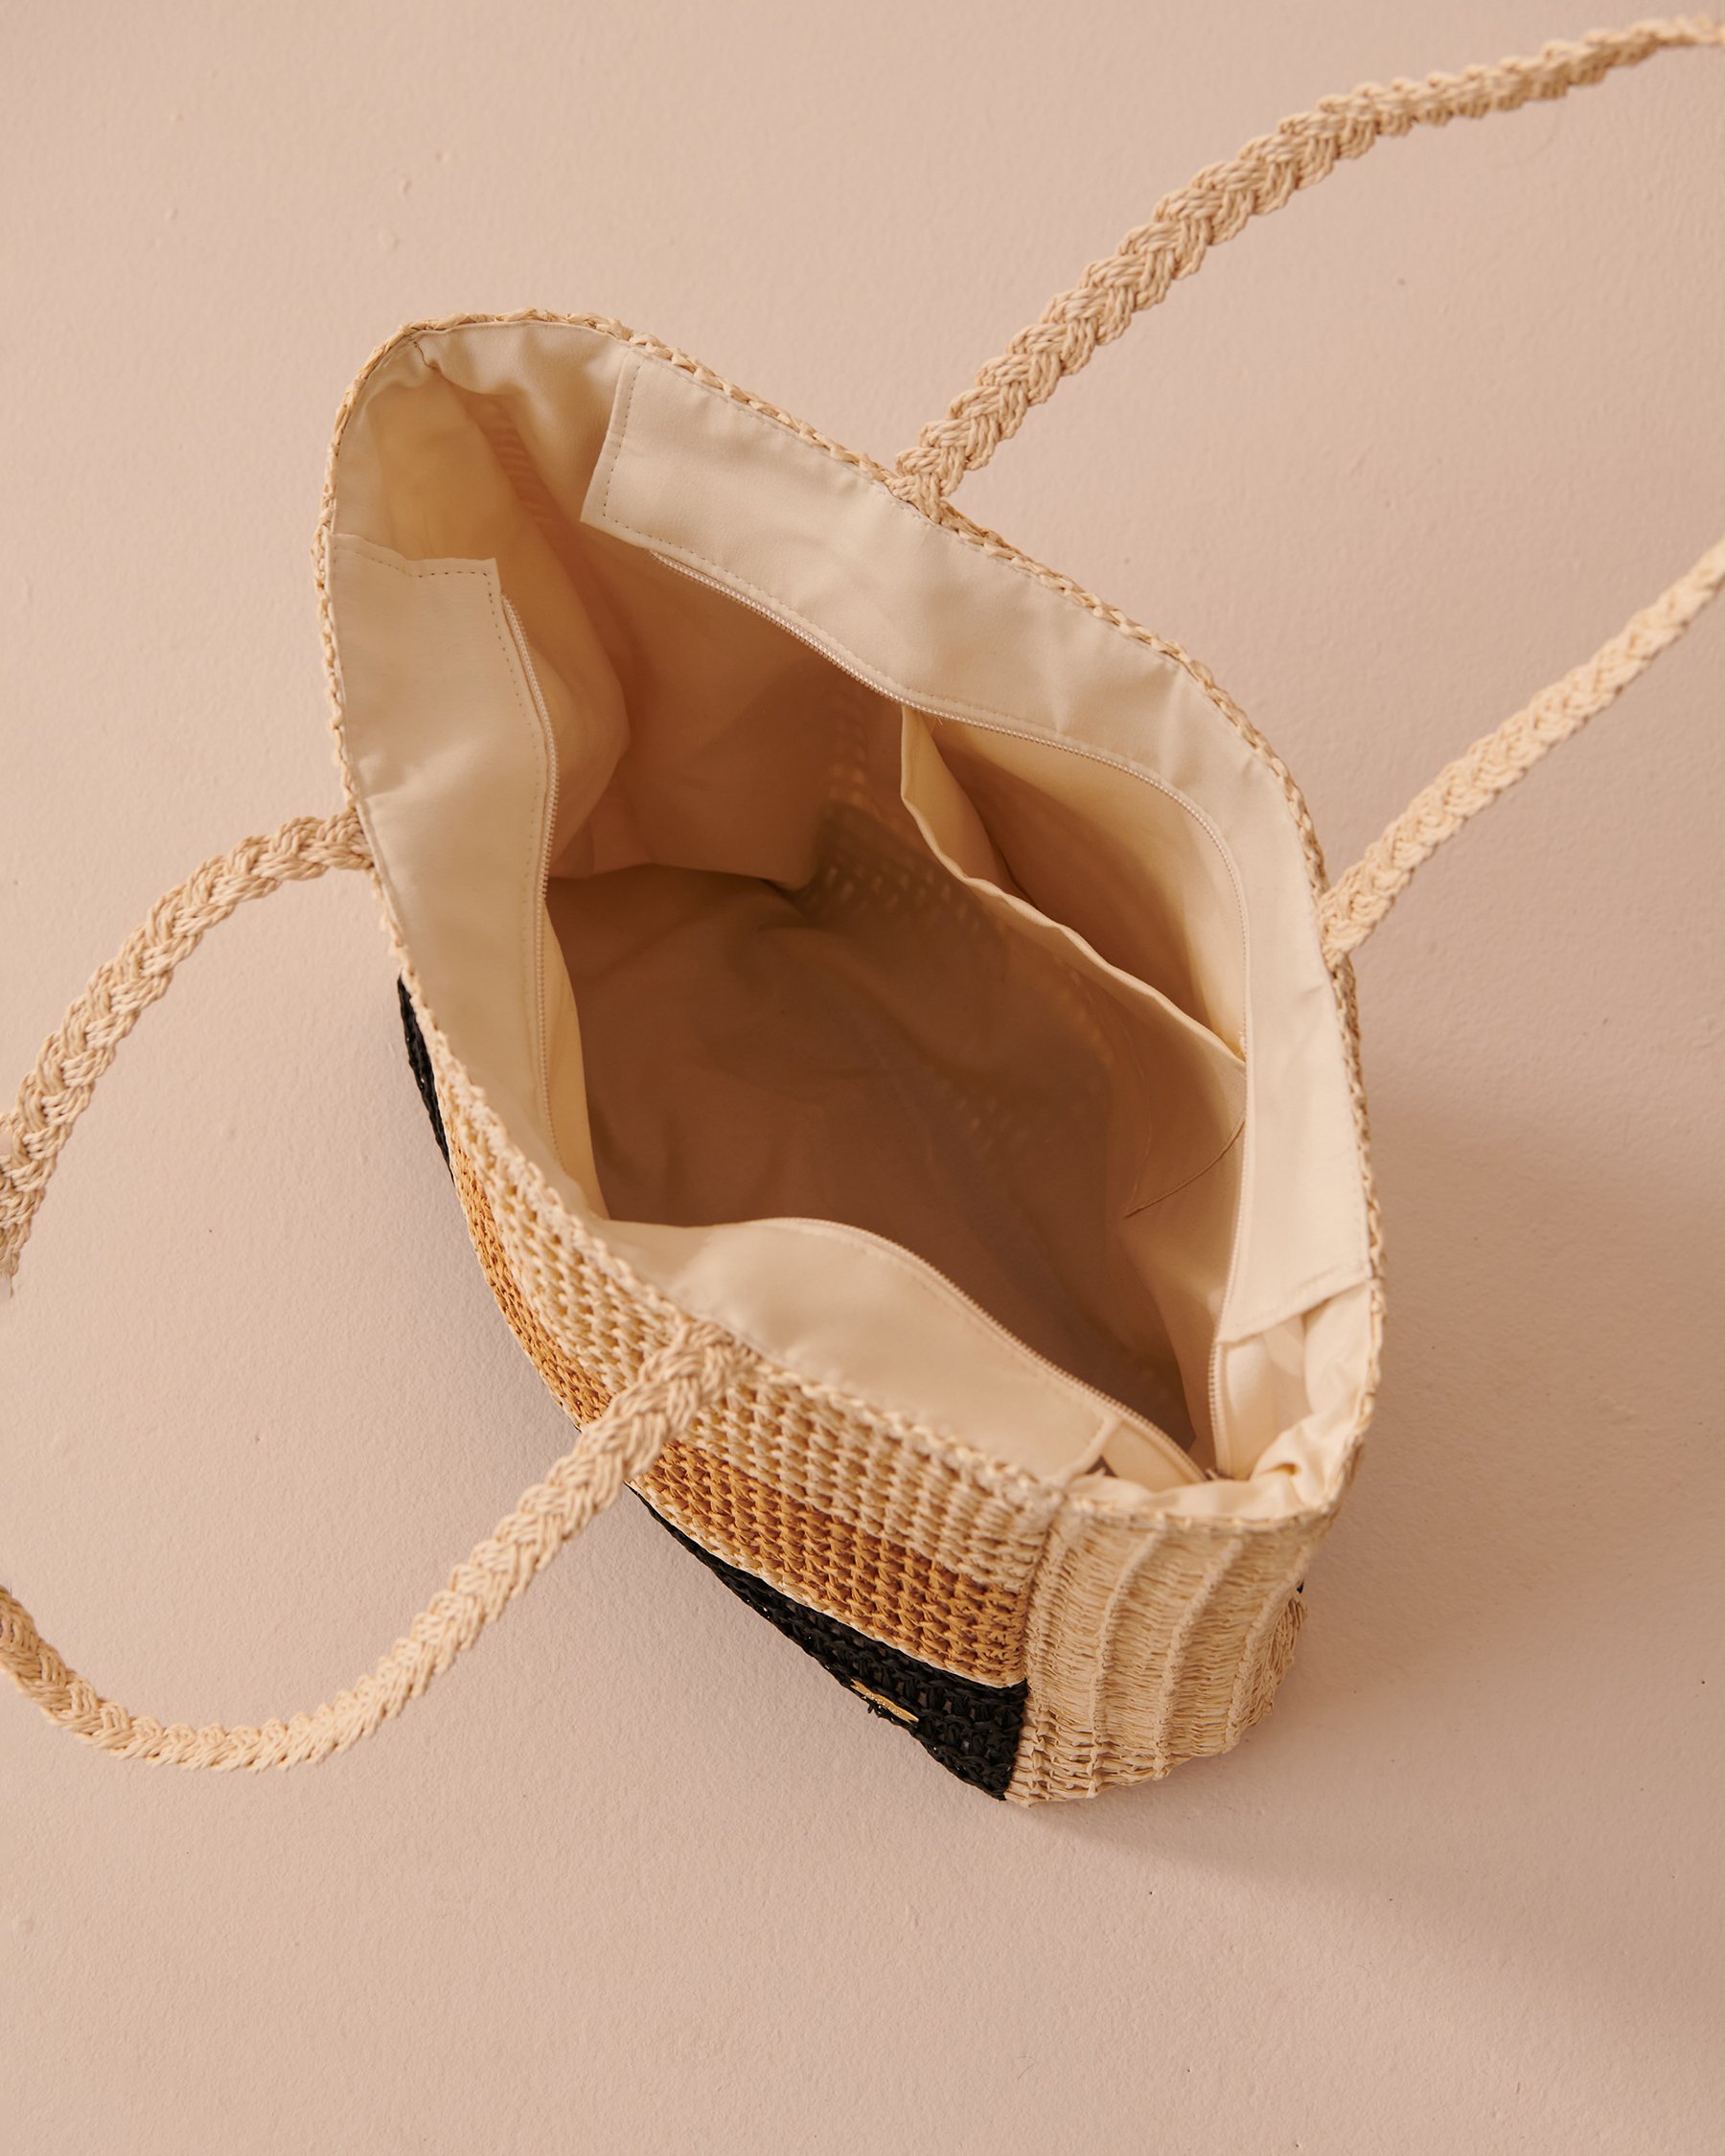 LA VIE EN ROSE AQUA Striped Straw Bag Striped Straw 80500095 - View2